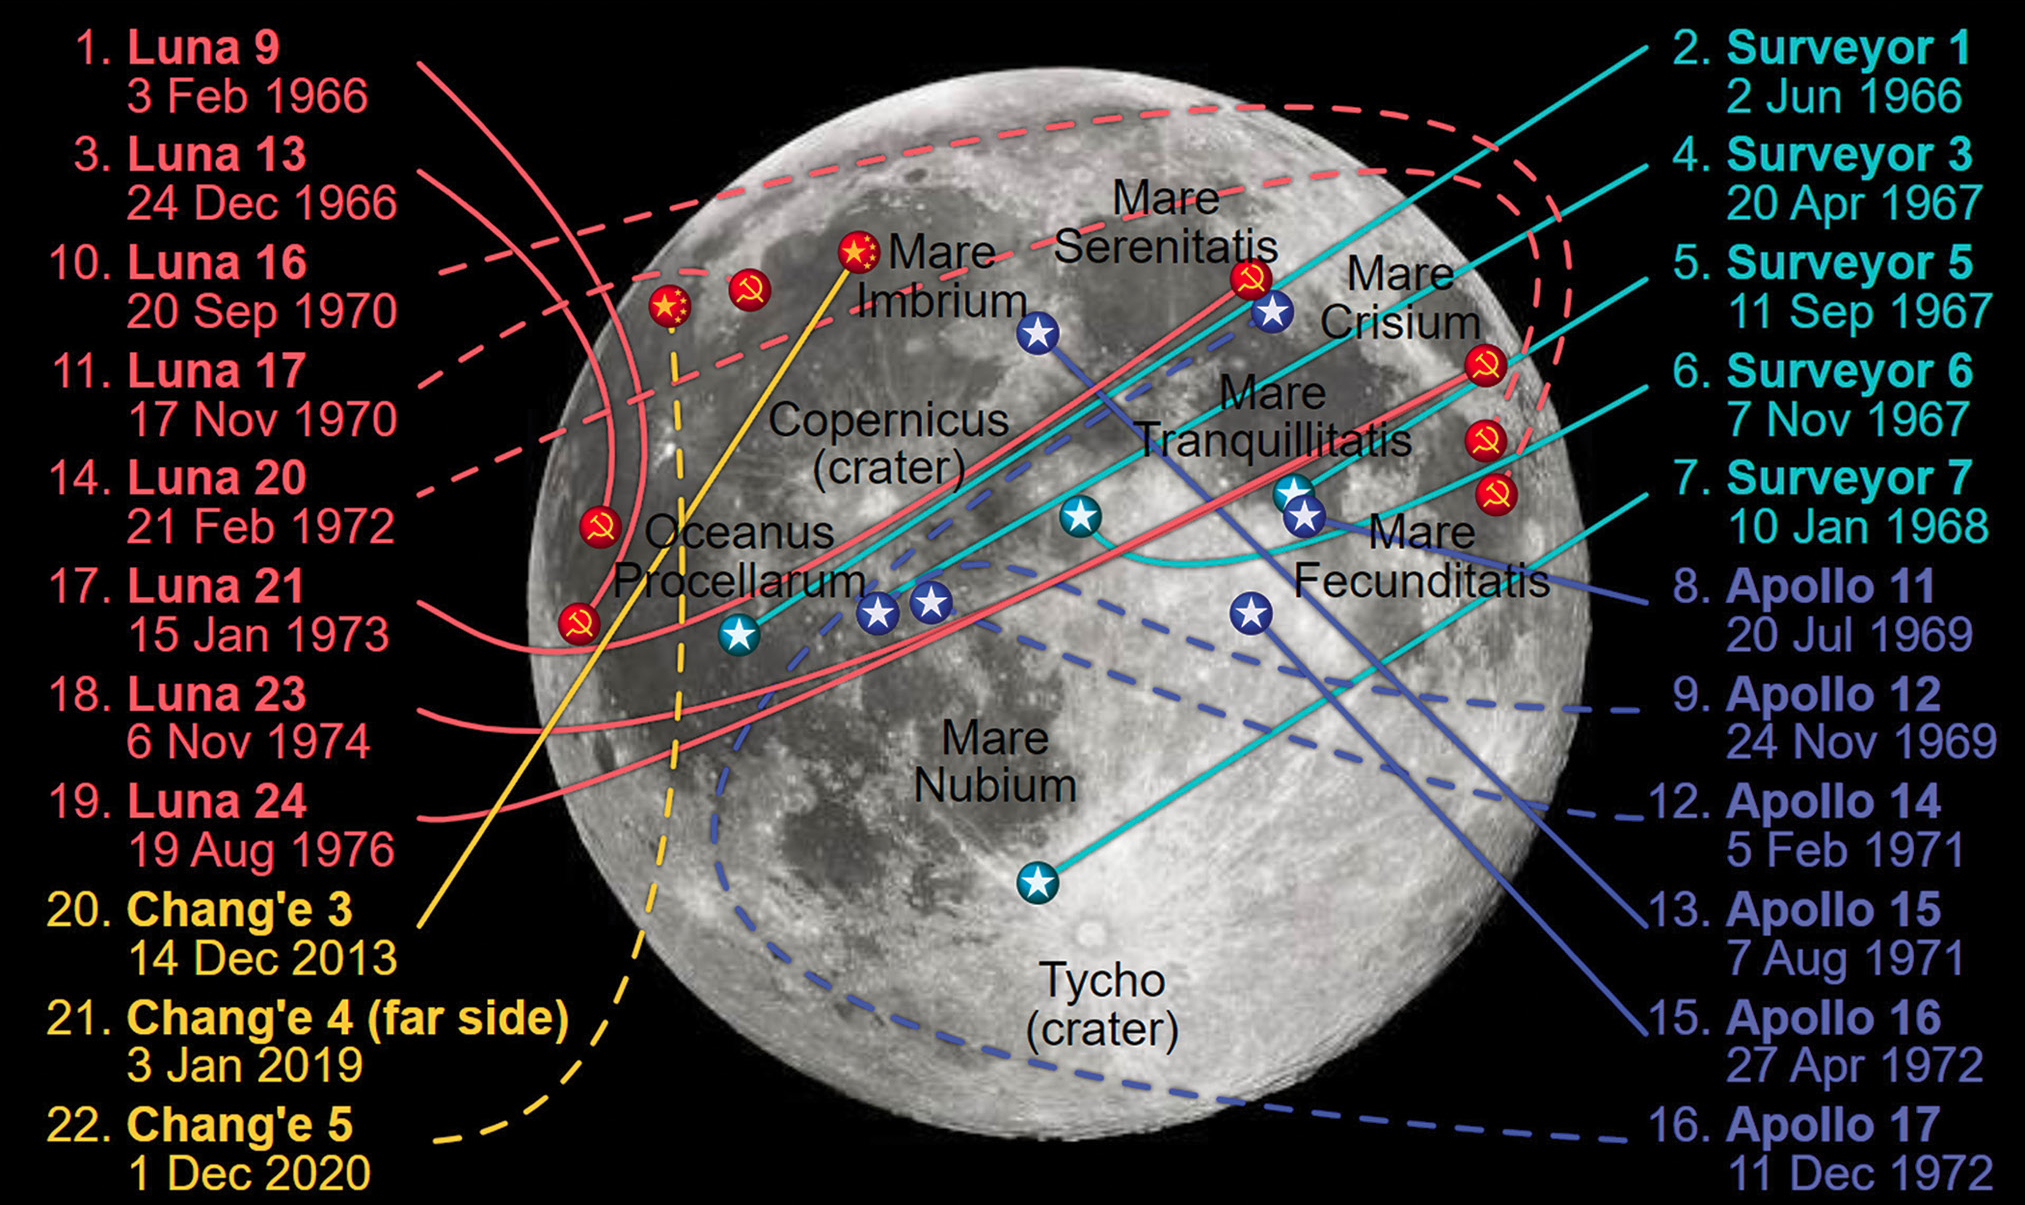 Lunar mission landing sites. 